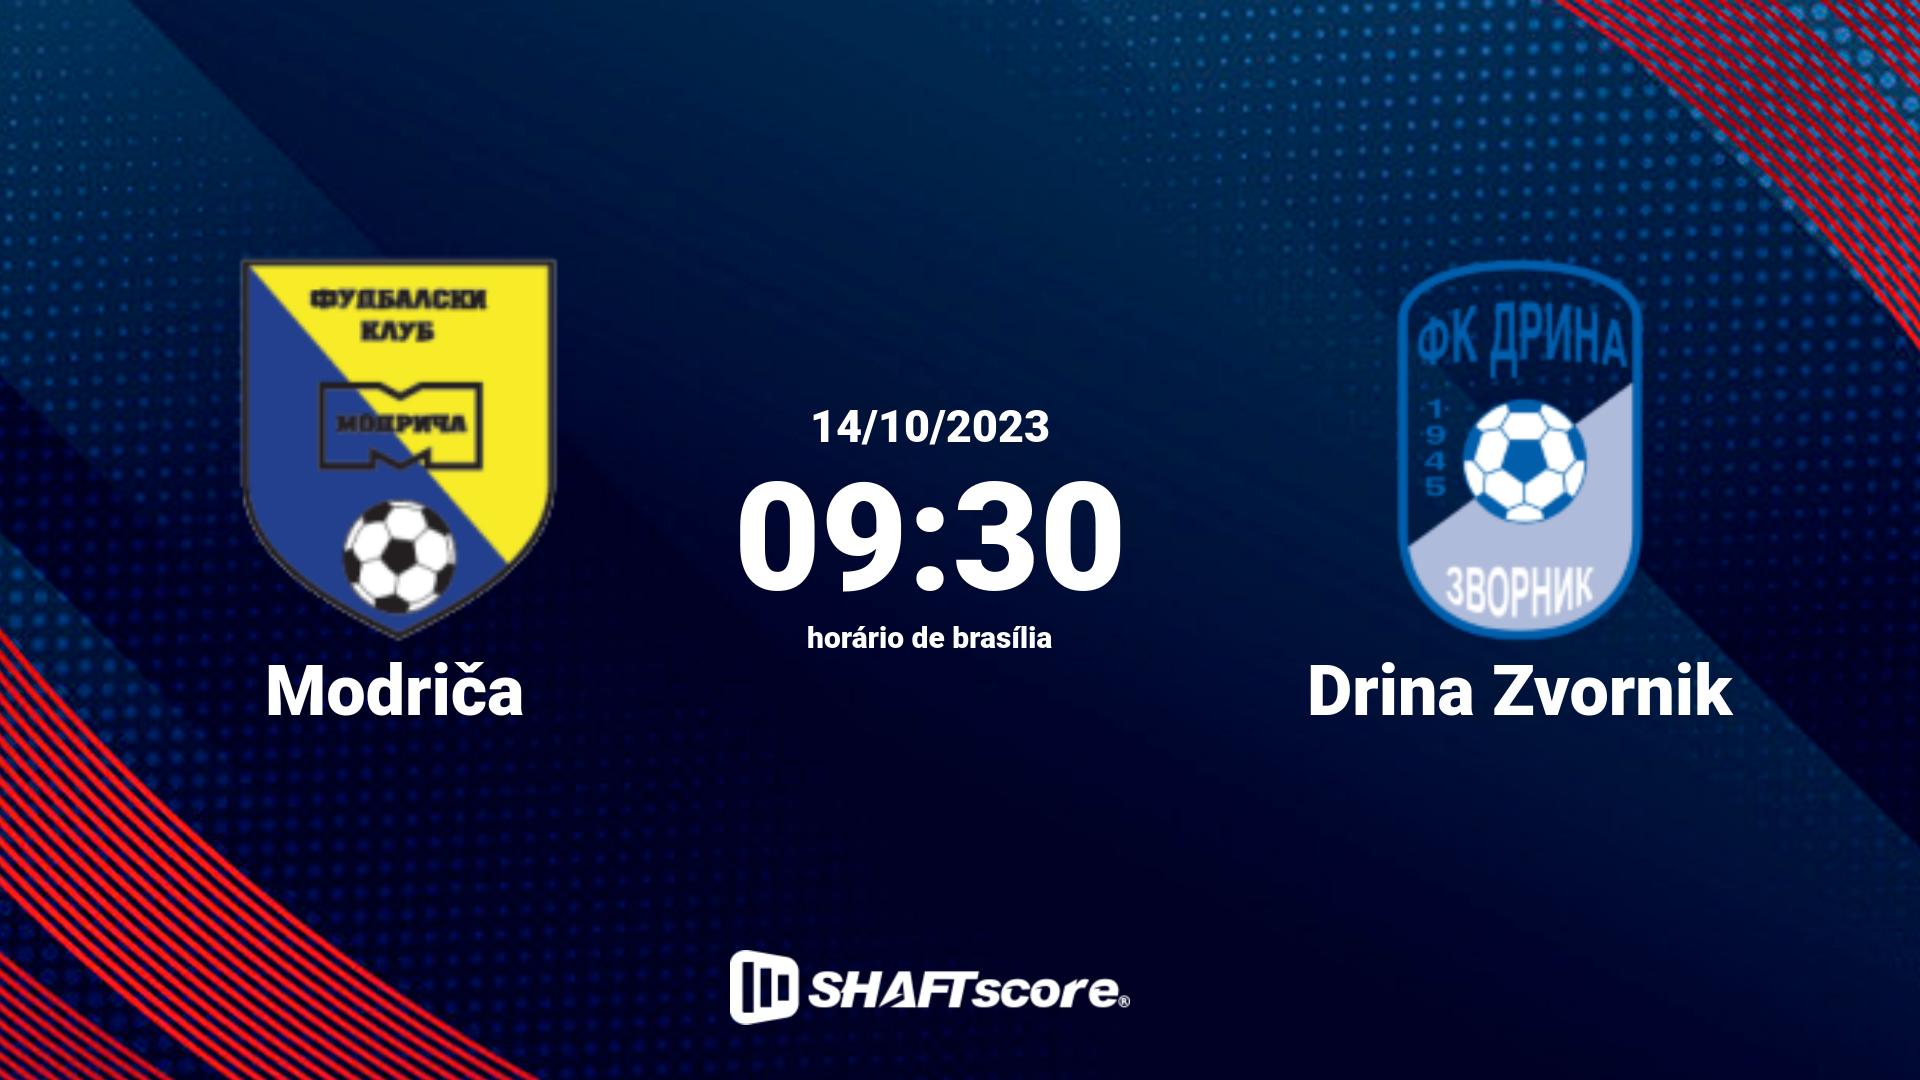 Estatísticas do jogo Modriča vs Drina Zvornik 14.10 09:30